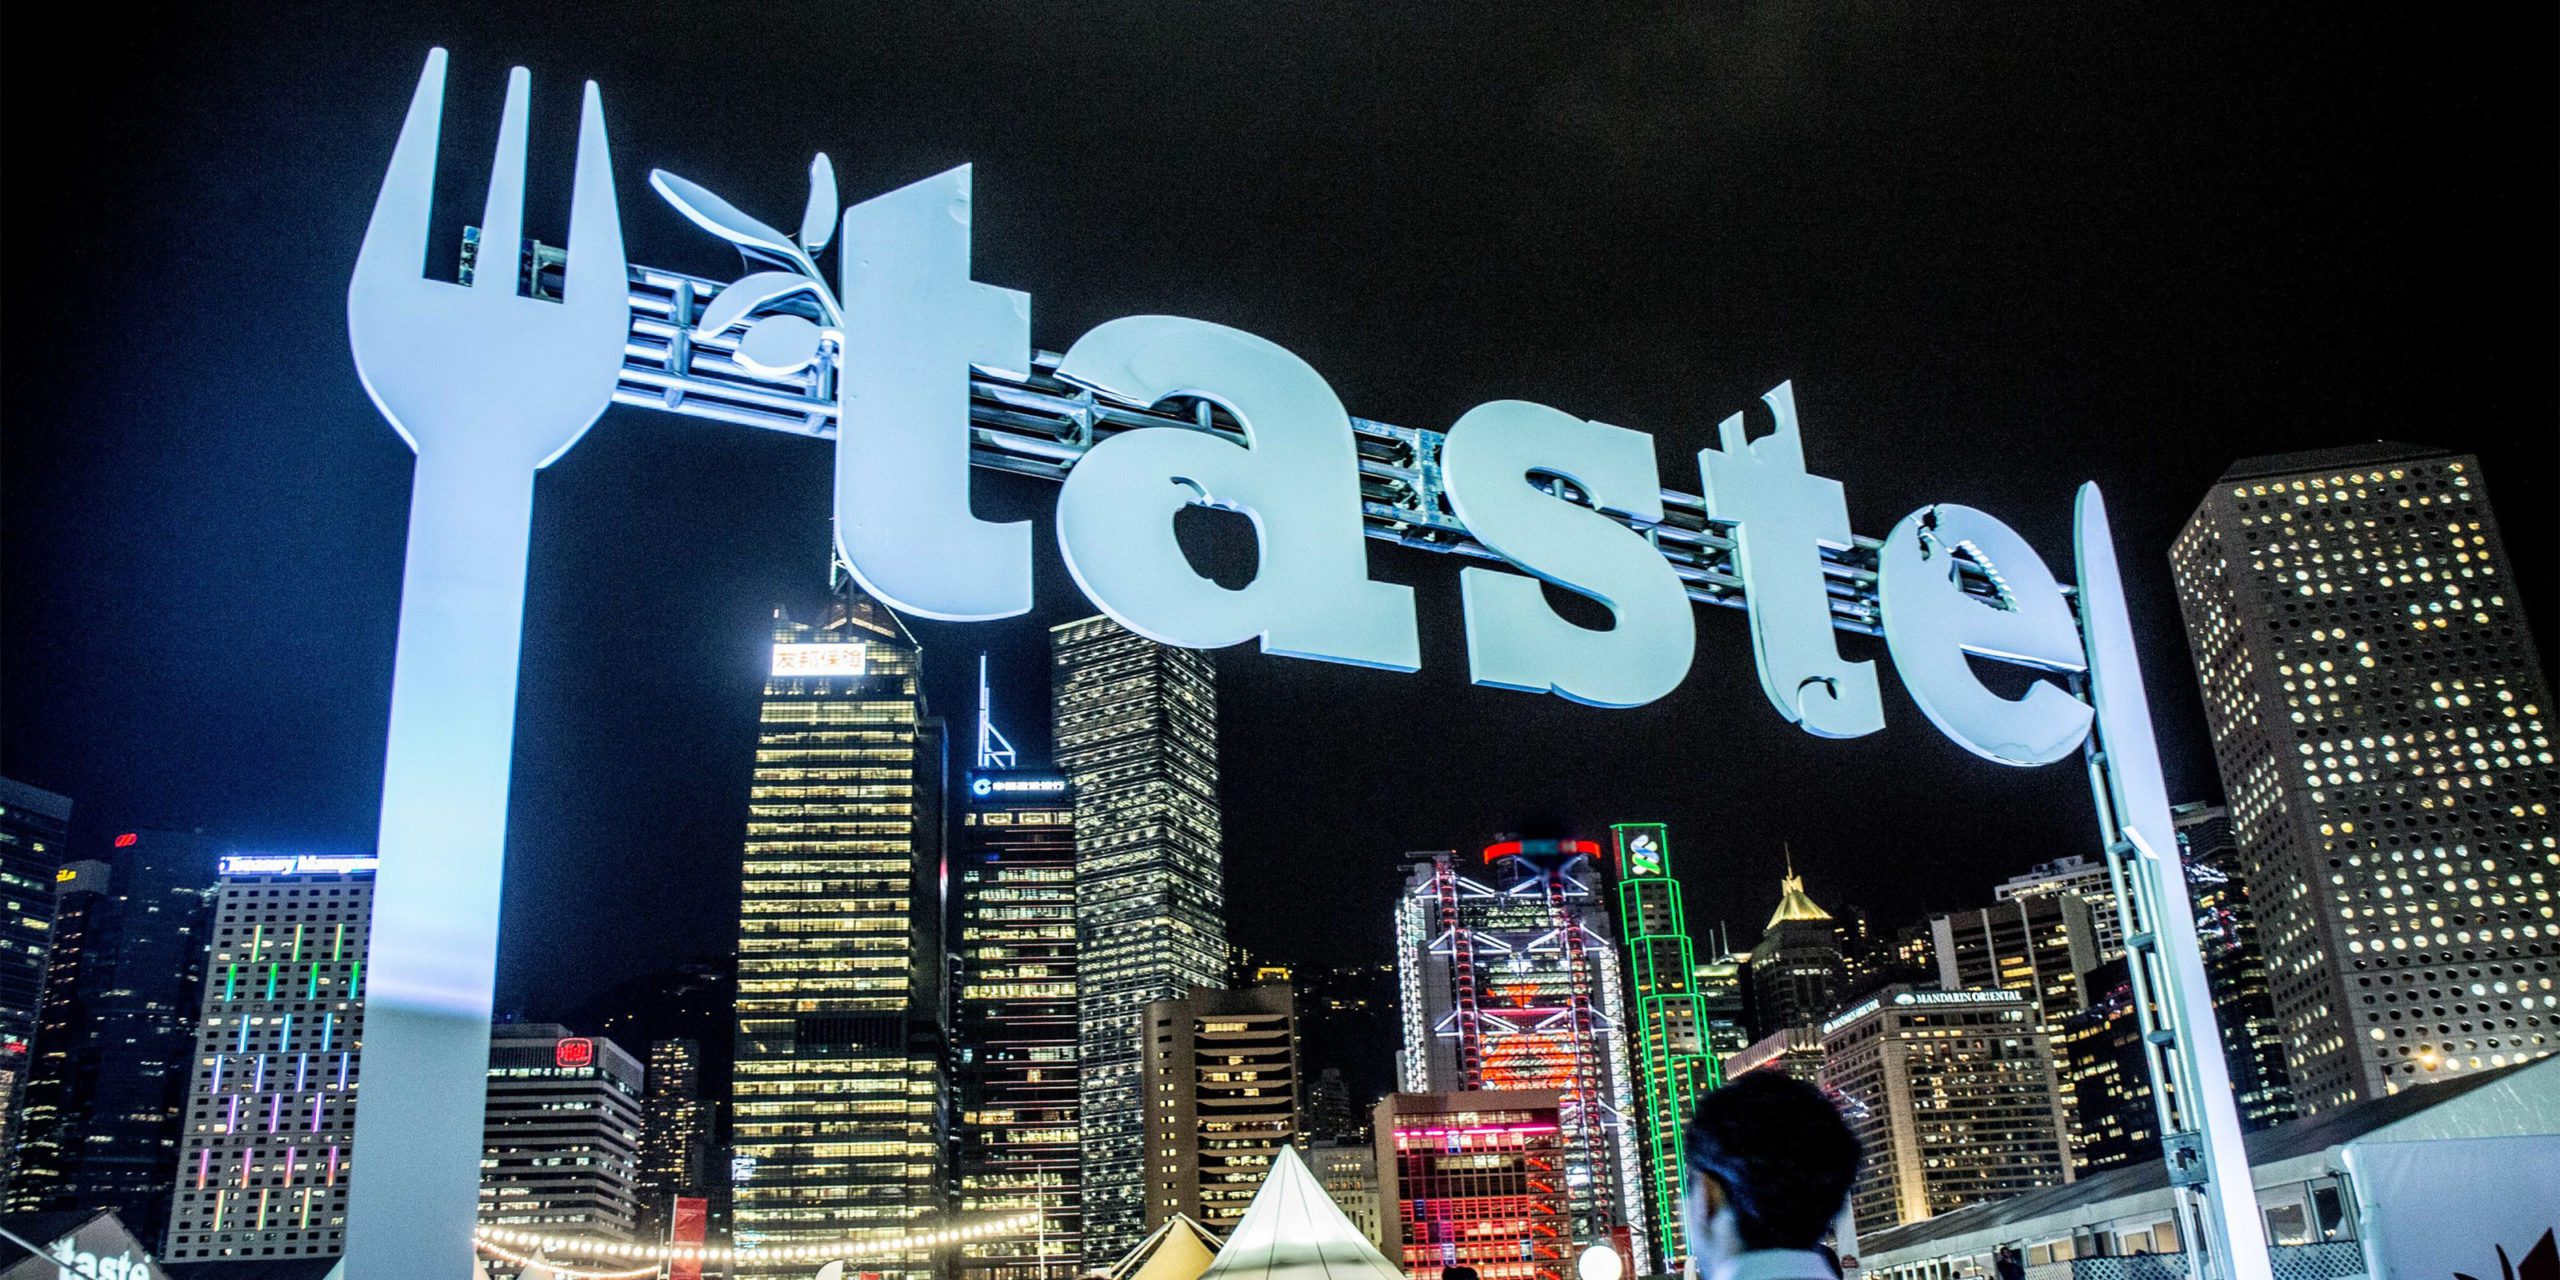 ipulse Design Events Branding Marketing Taste of Hong Kong